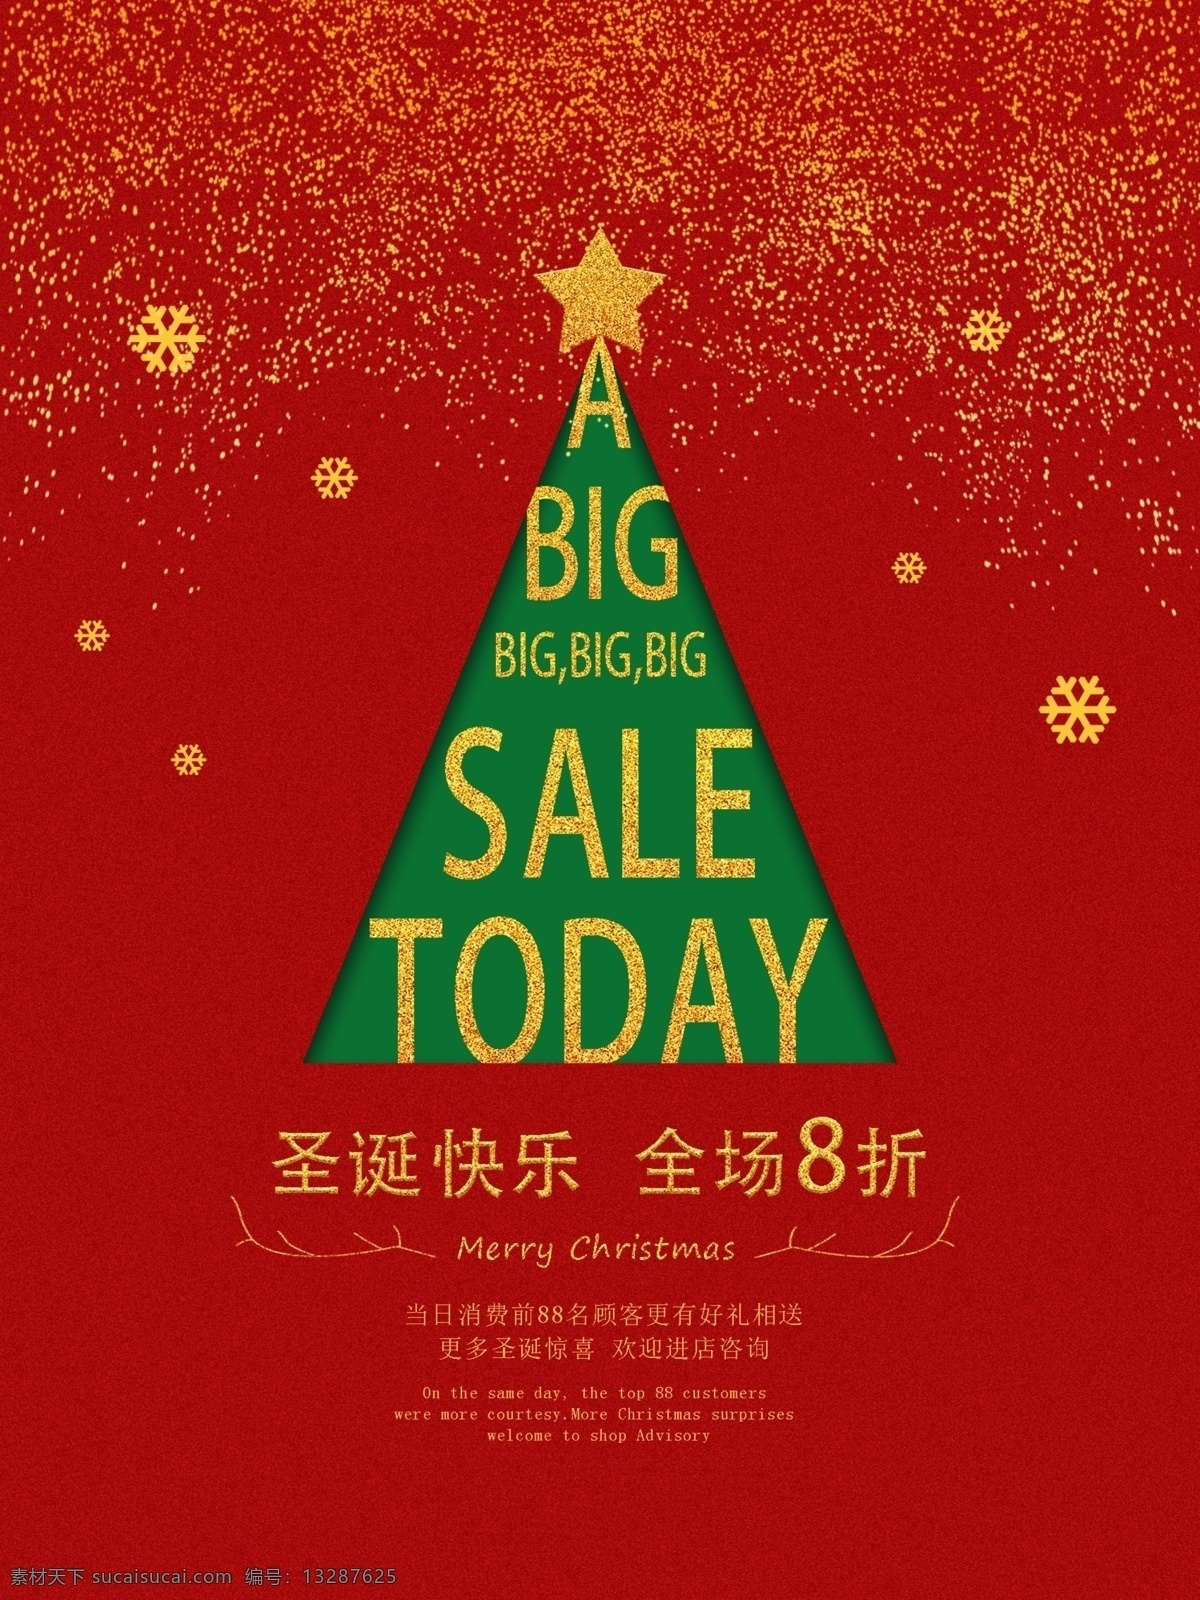 中国 红 圣诞 平安夜 海报 中国红 营销推广 平安夜圣诞节